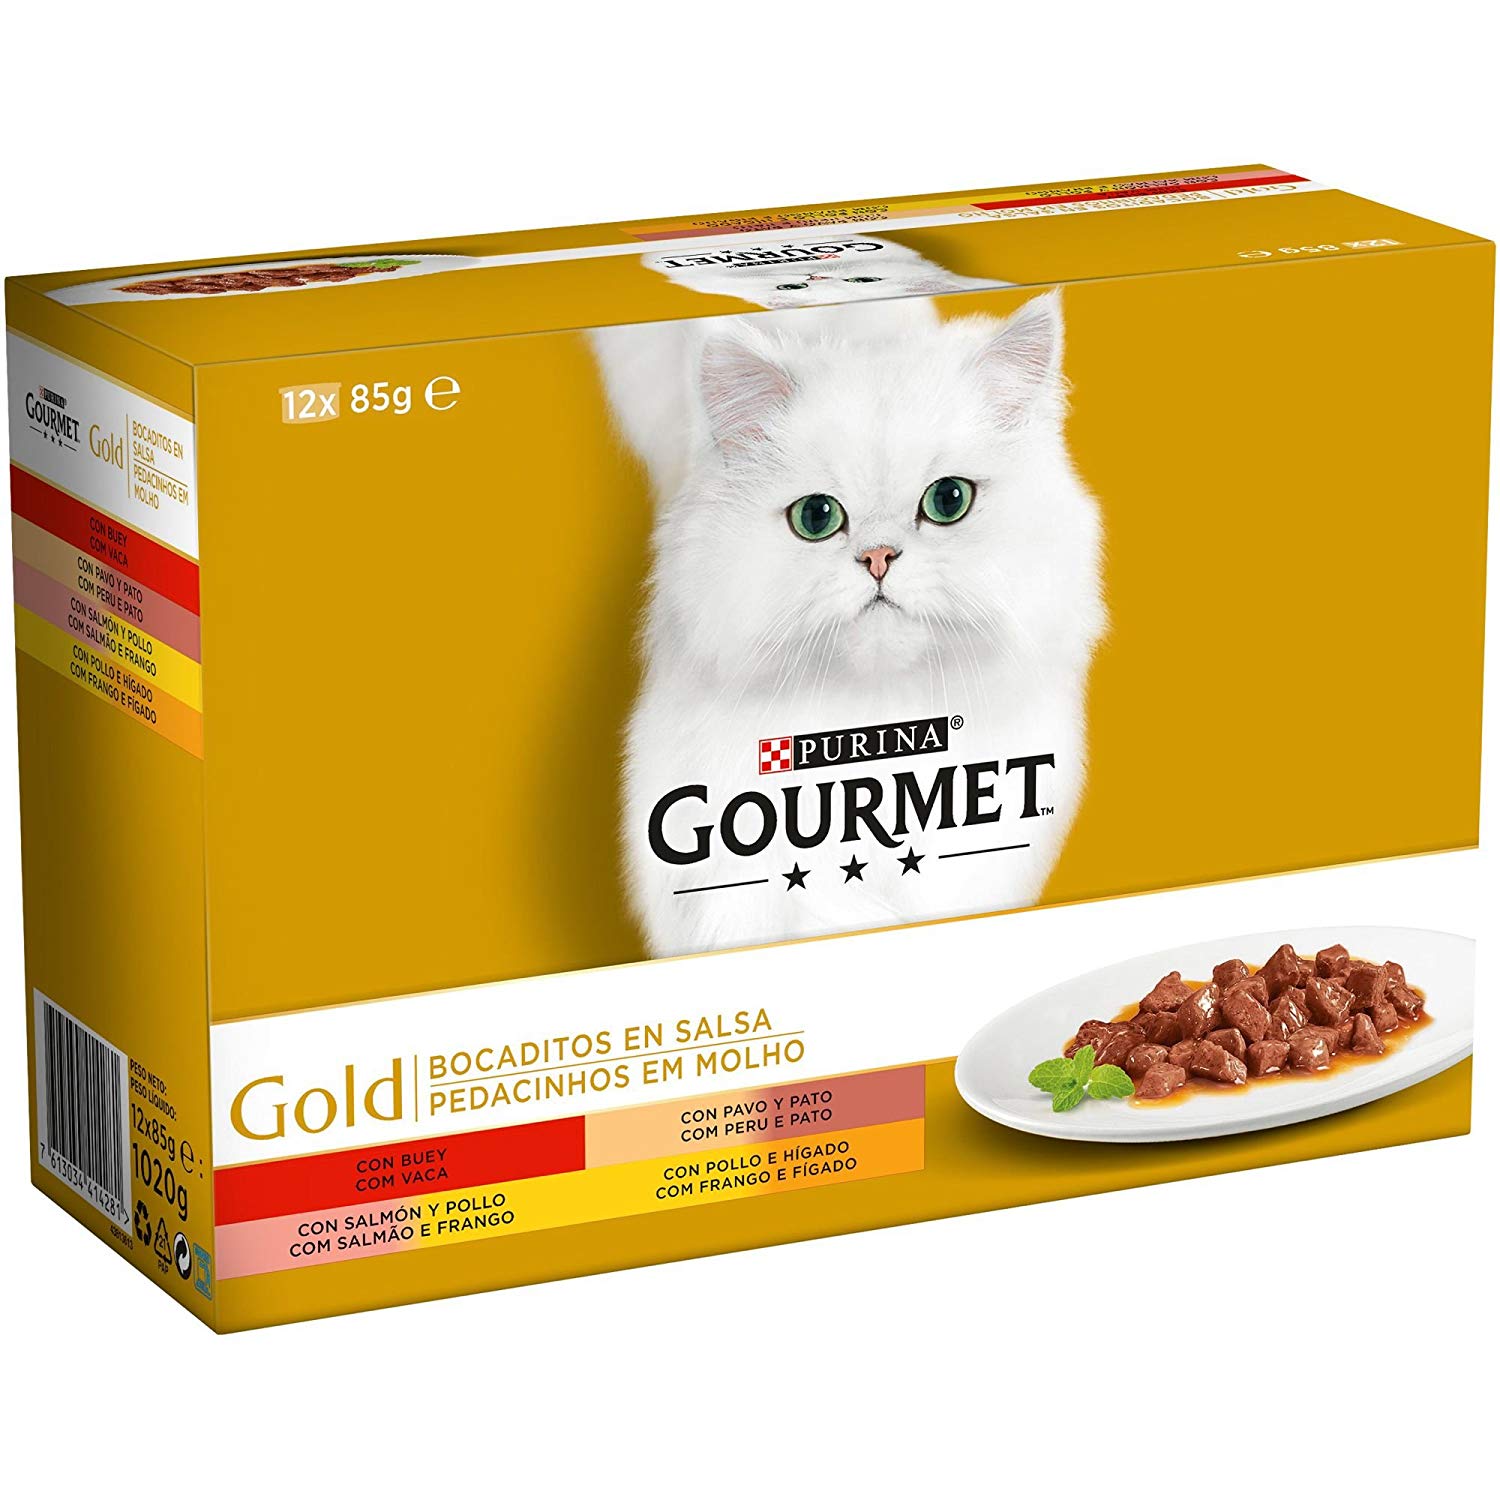 8 latas de Purina Gourmet Gold para gatos solo 35,2€